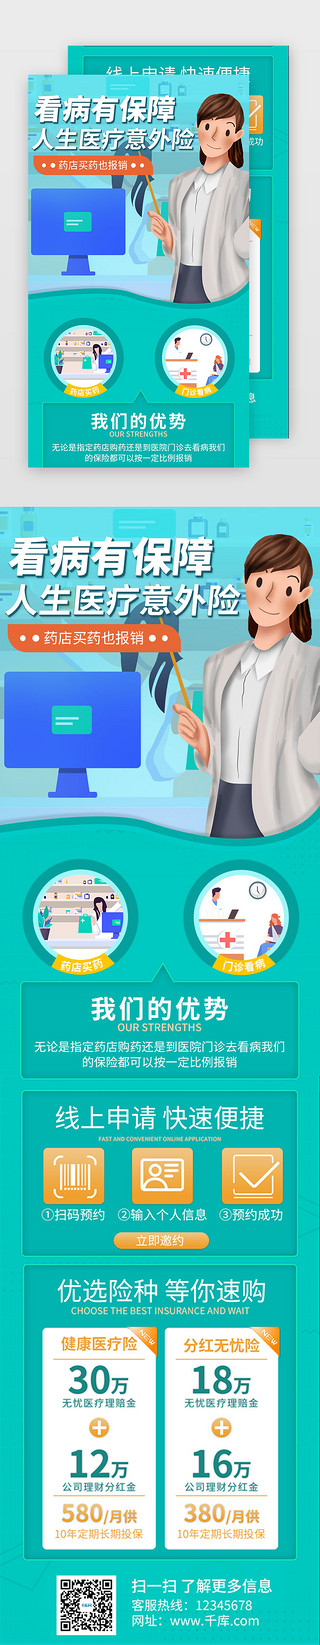 健康码扫码器UI设计素材_绿色保险医疗健康促销活动介绍H5